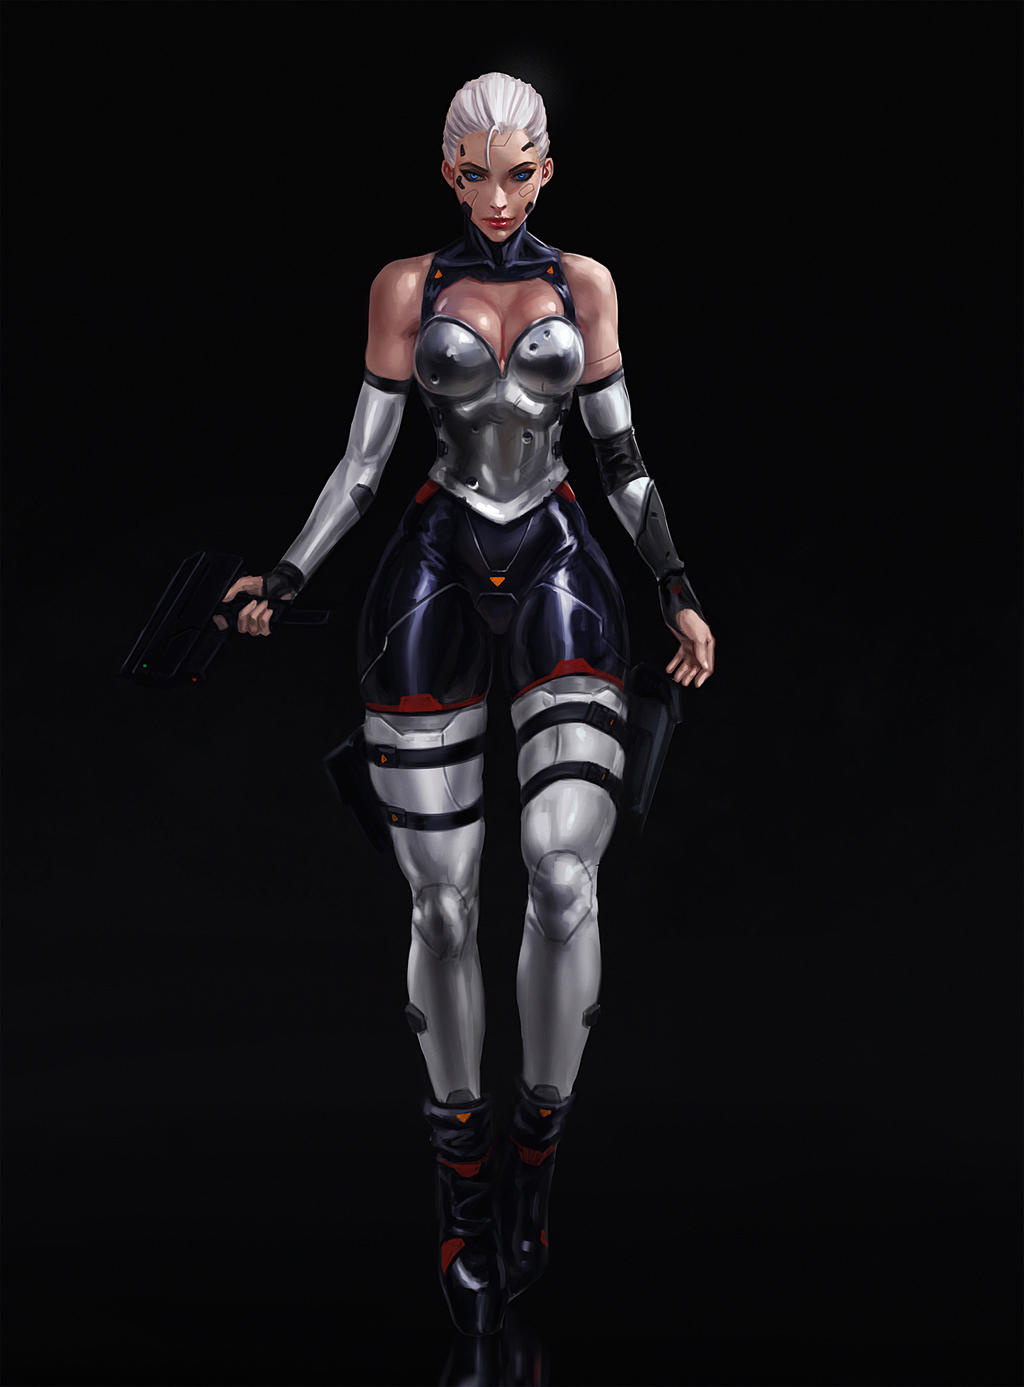 Cyberpunk Assassin by SalvadorTrakal Sex Images Hq